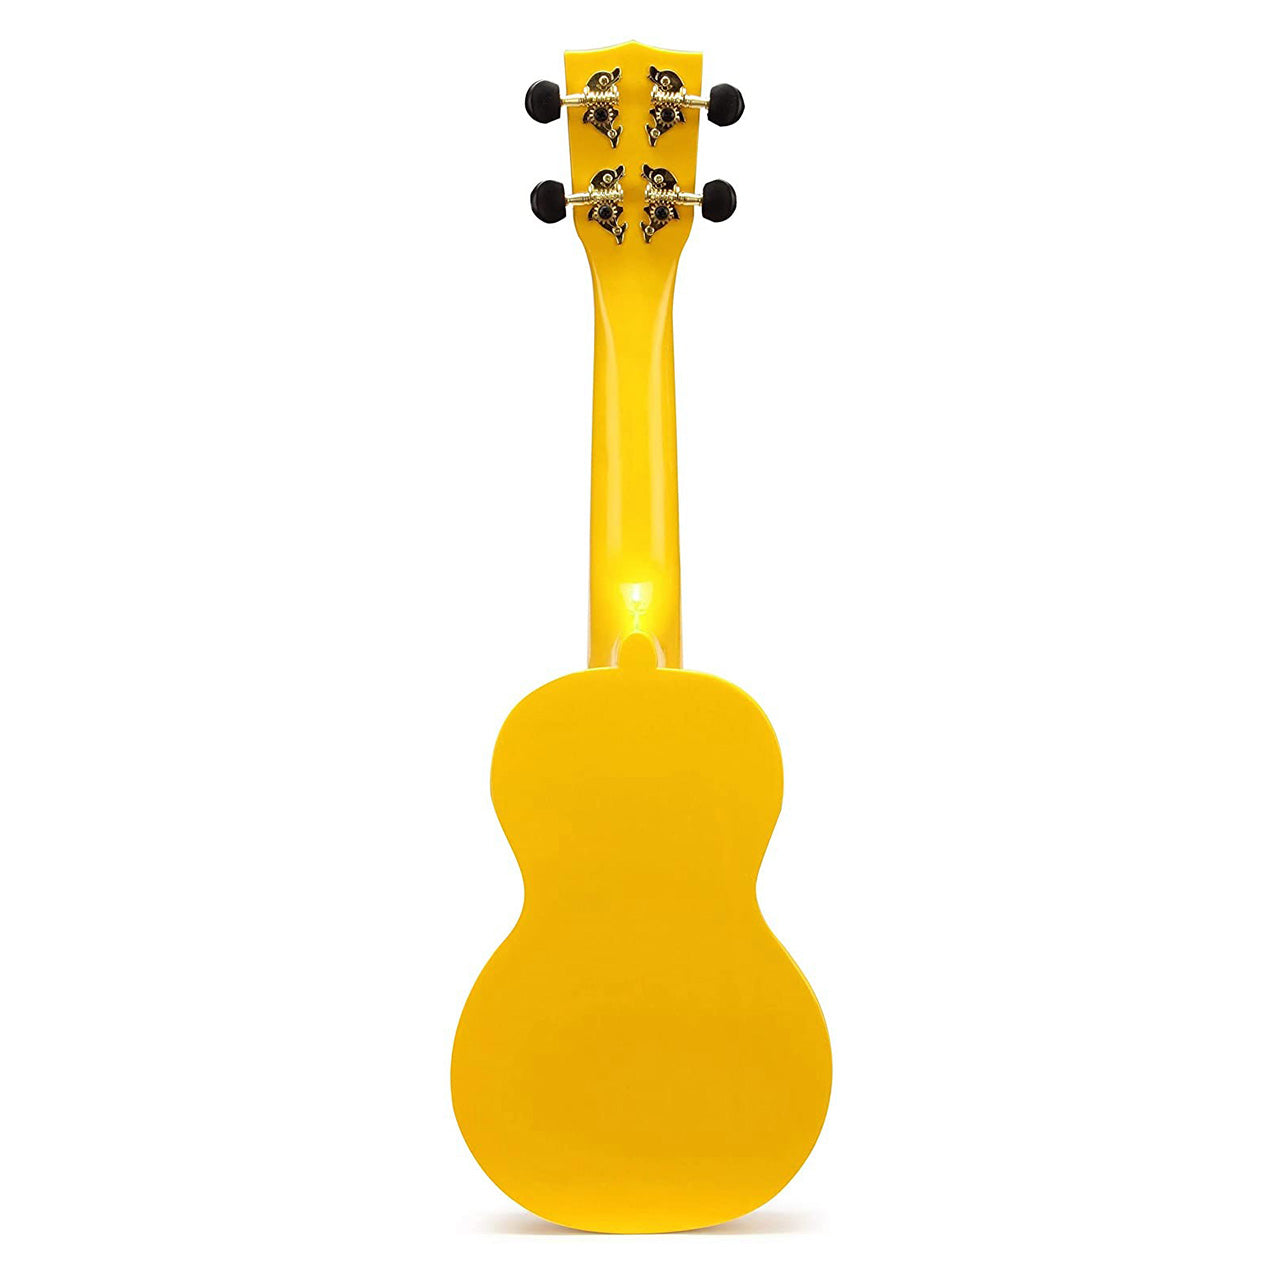 Mahalo Rainbow Series Soprano Acoustic Ukulele 4 String Guitar with 12 Frets, NuBone XB Bridge Saddles MR1YW